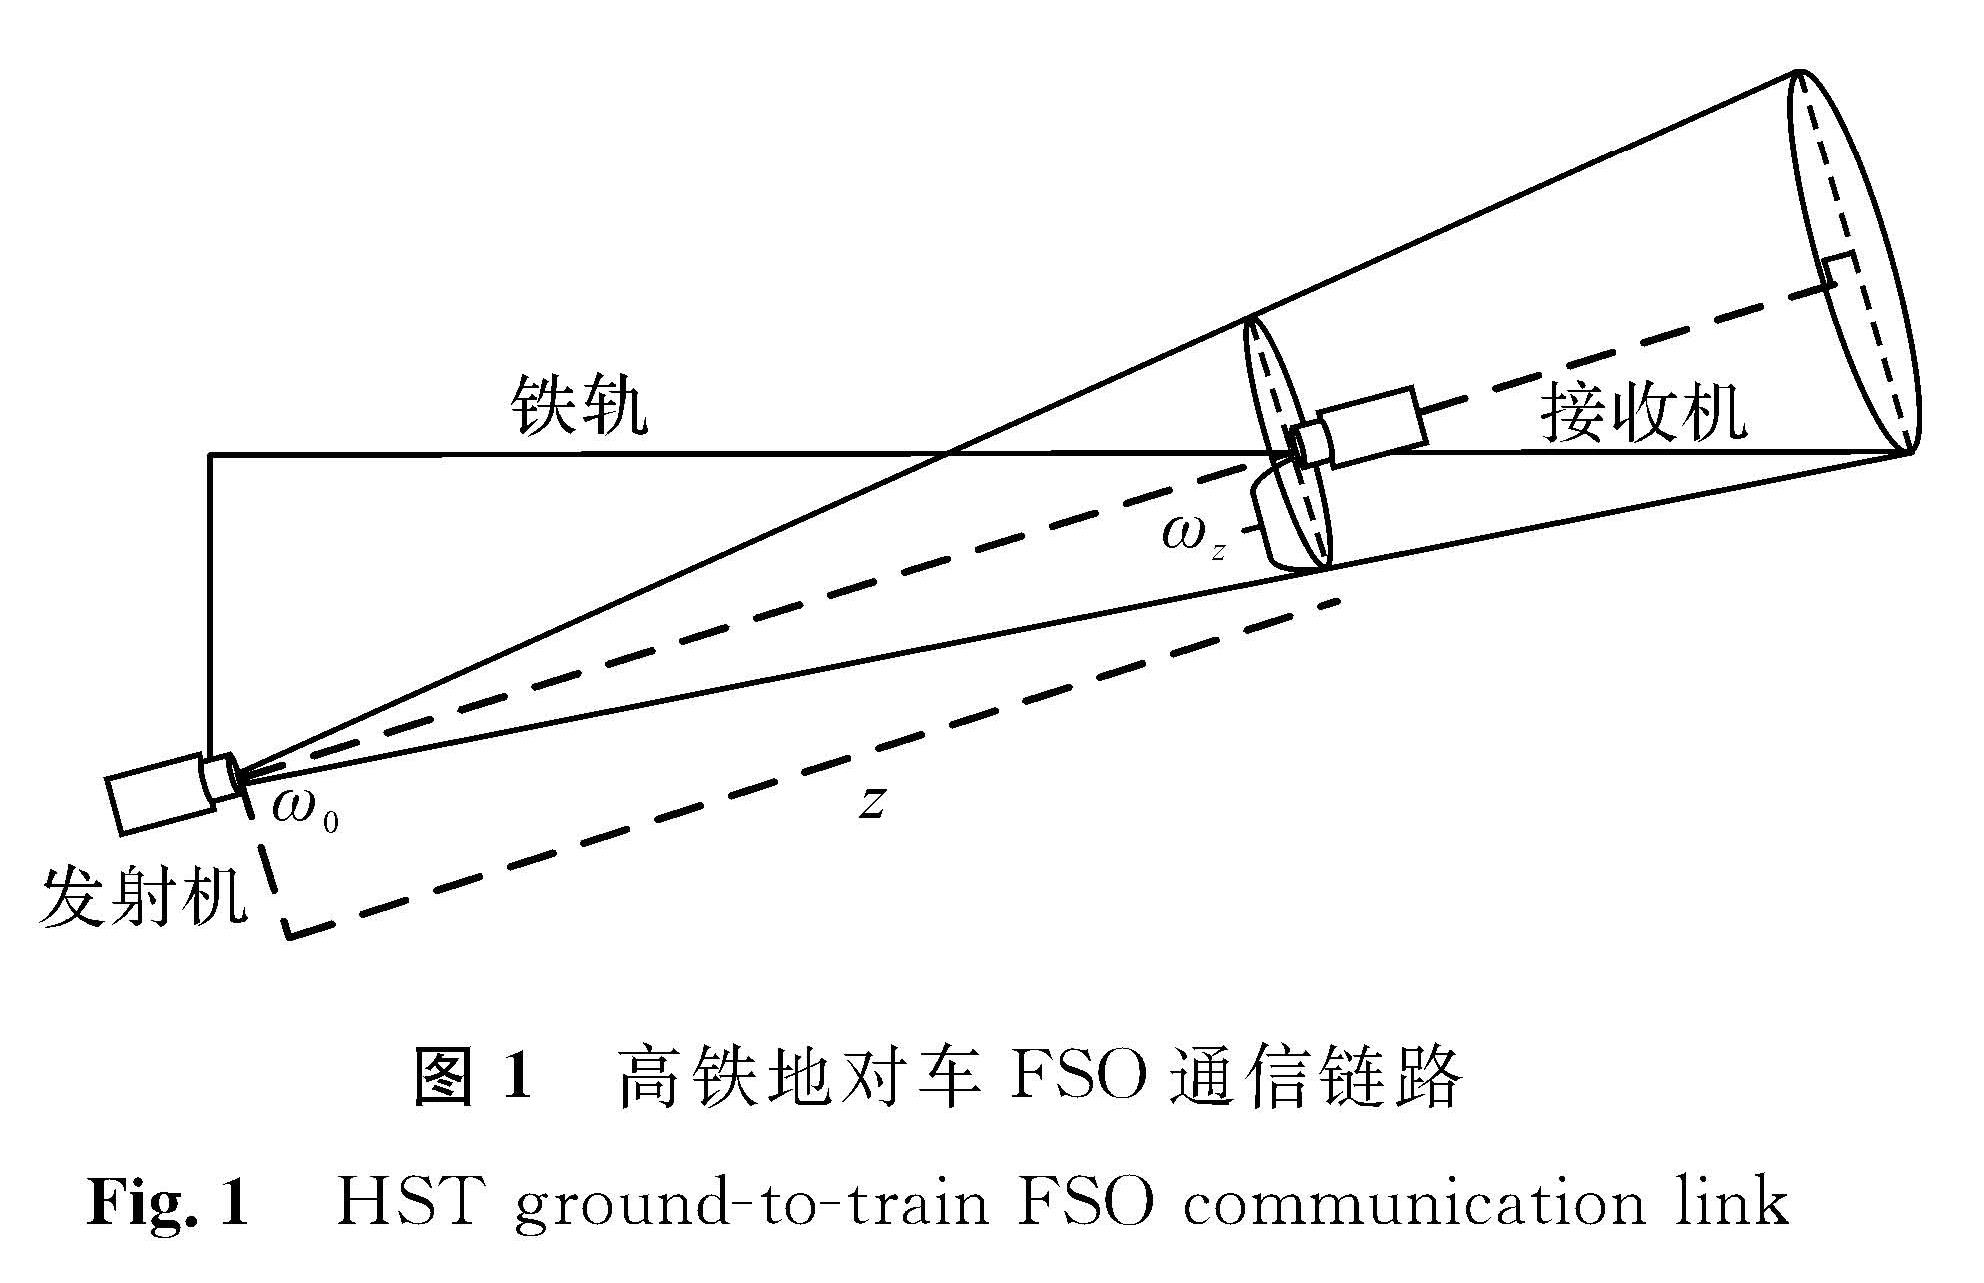 图1 高铁地对车FSO通信链路<br/>Fig.1 HST ground-to-train FSO communication link